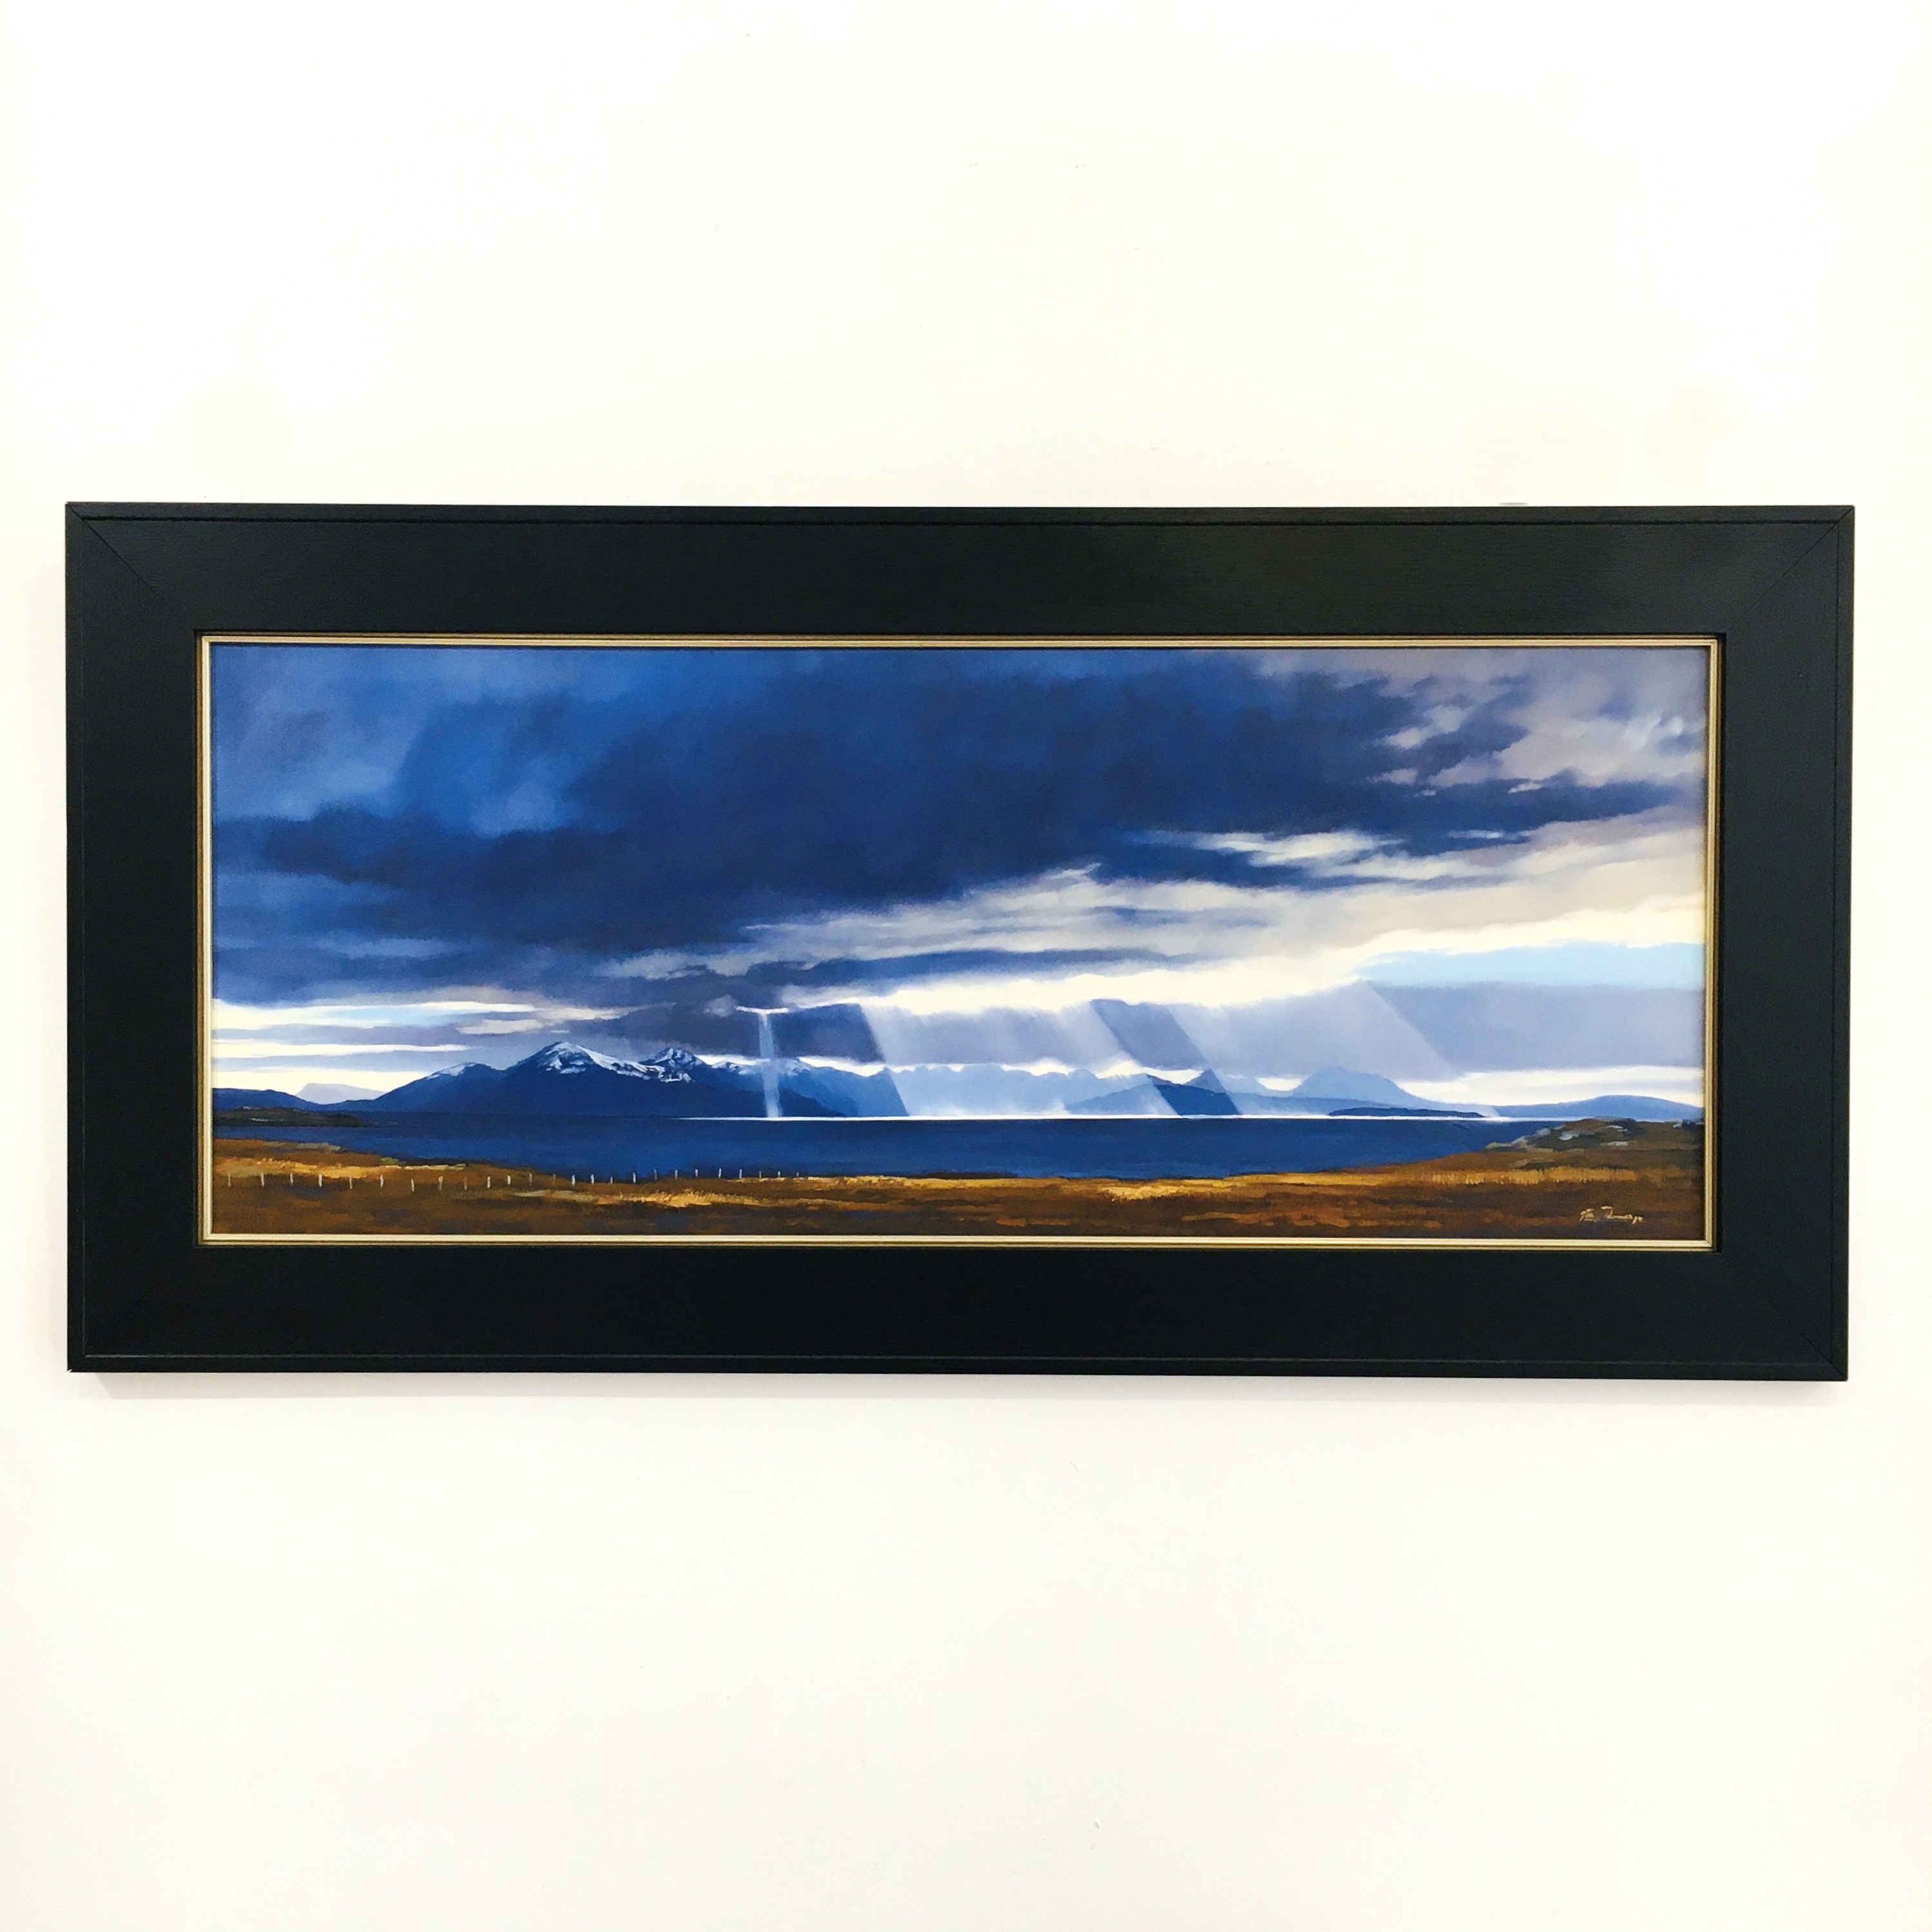 'Blue Skye' by artist George Noakes